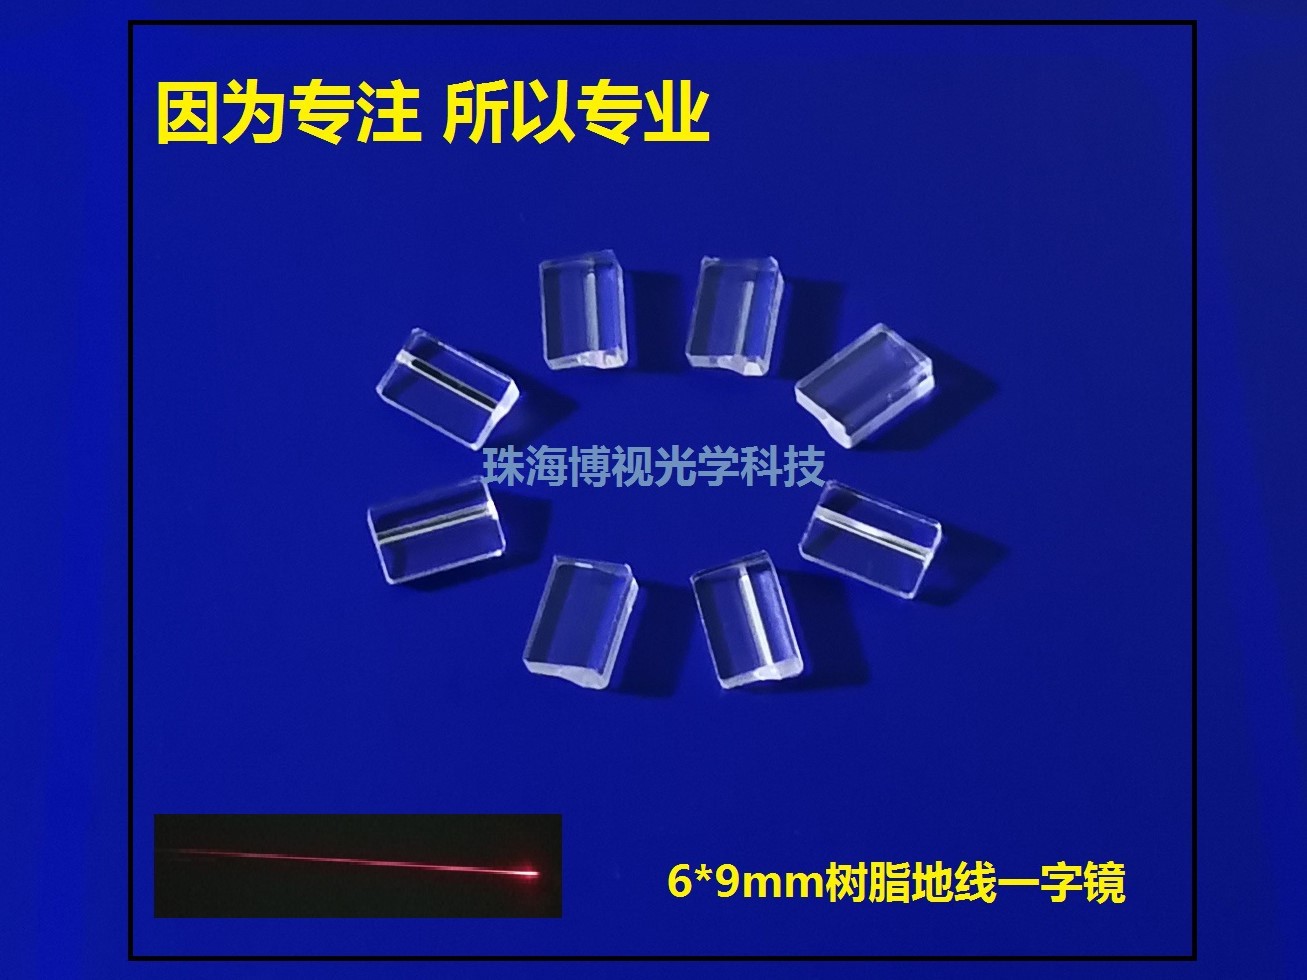 【生产厂家】供应激光划线、切割产品6×9mm树脂打一字地线镜片